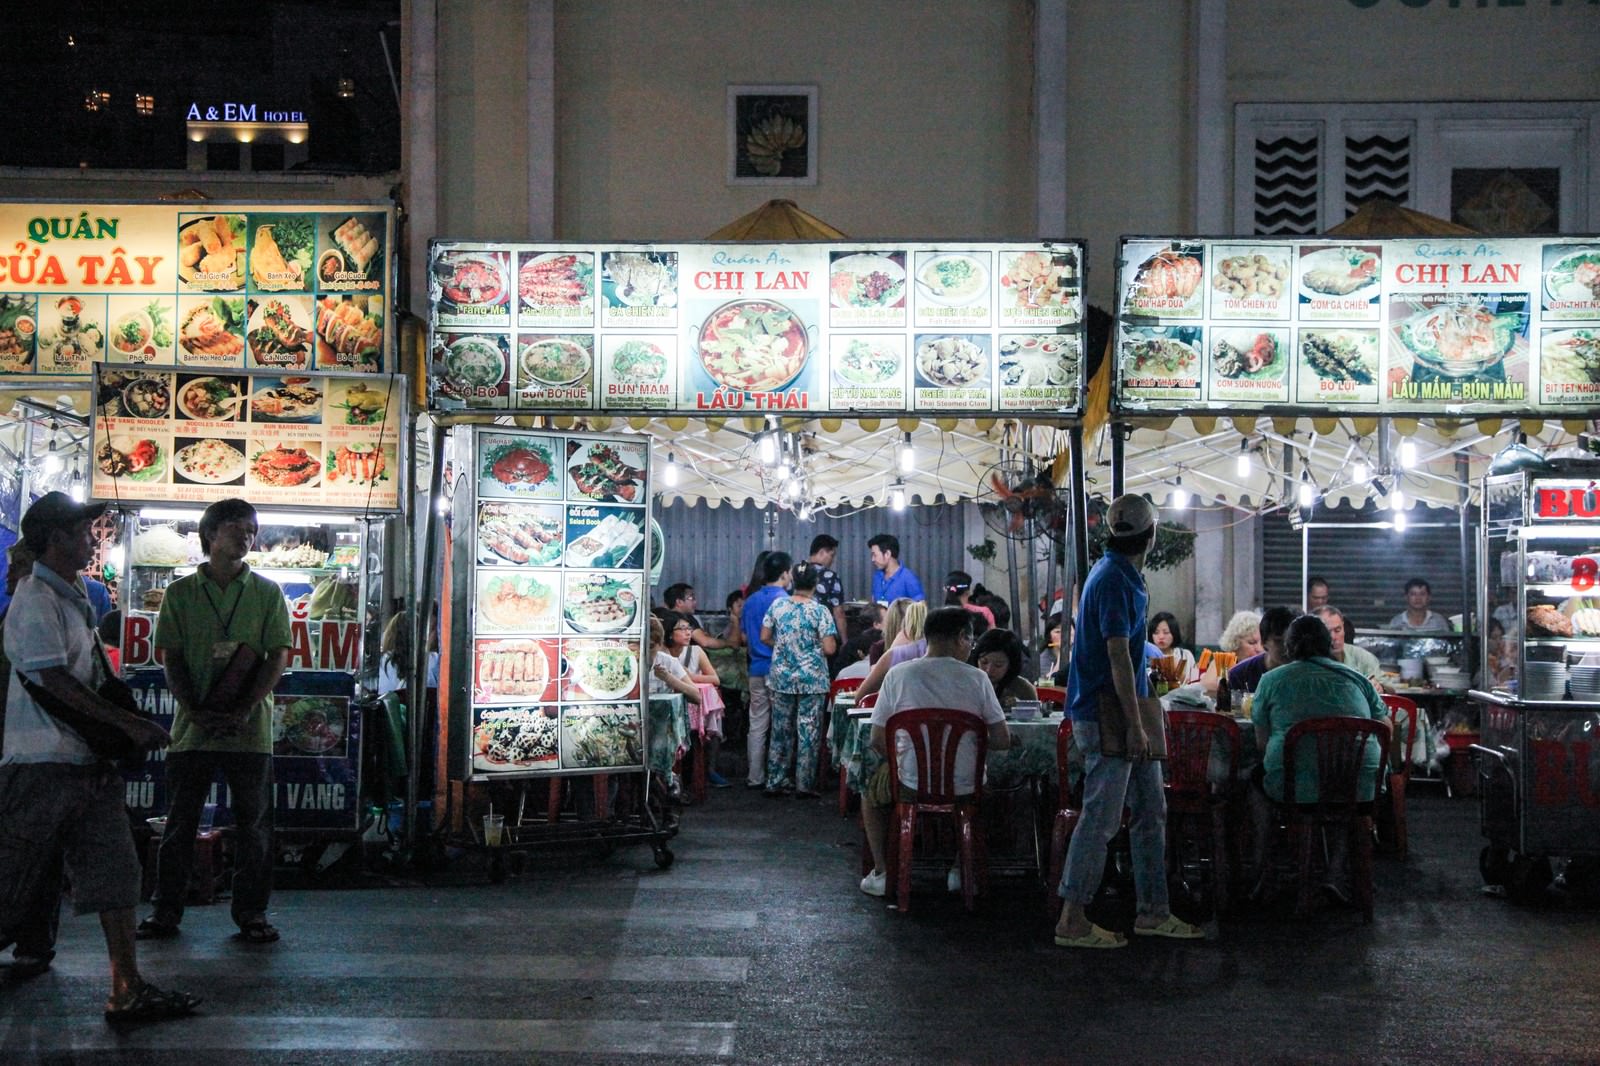 ベトナム料理が食べられる屋台村の写真 画像 フリー素材 ぱくたそ